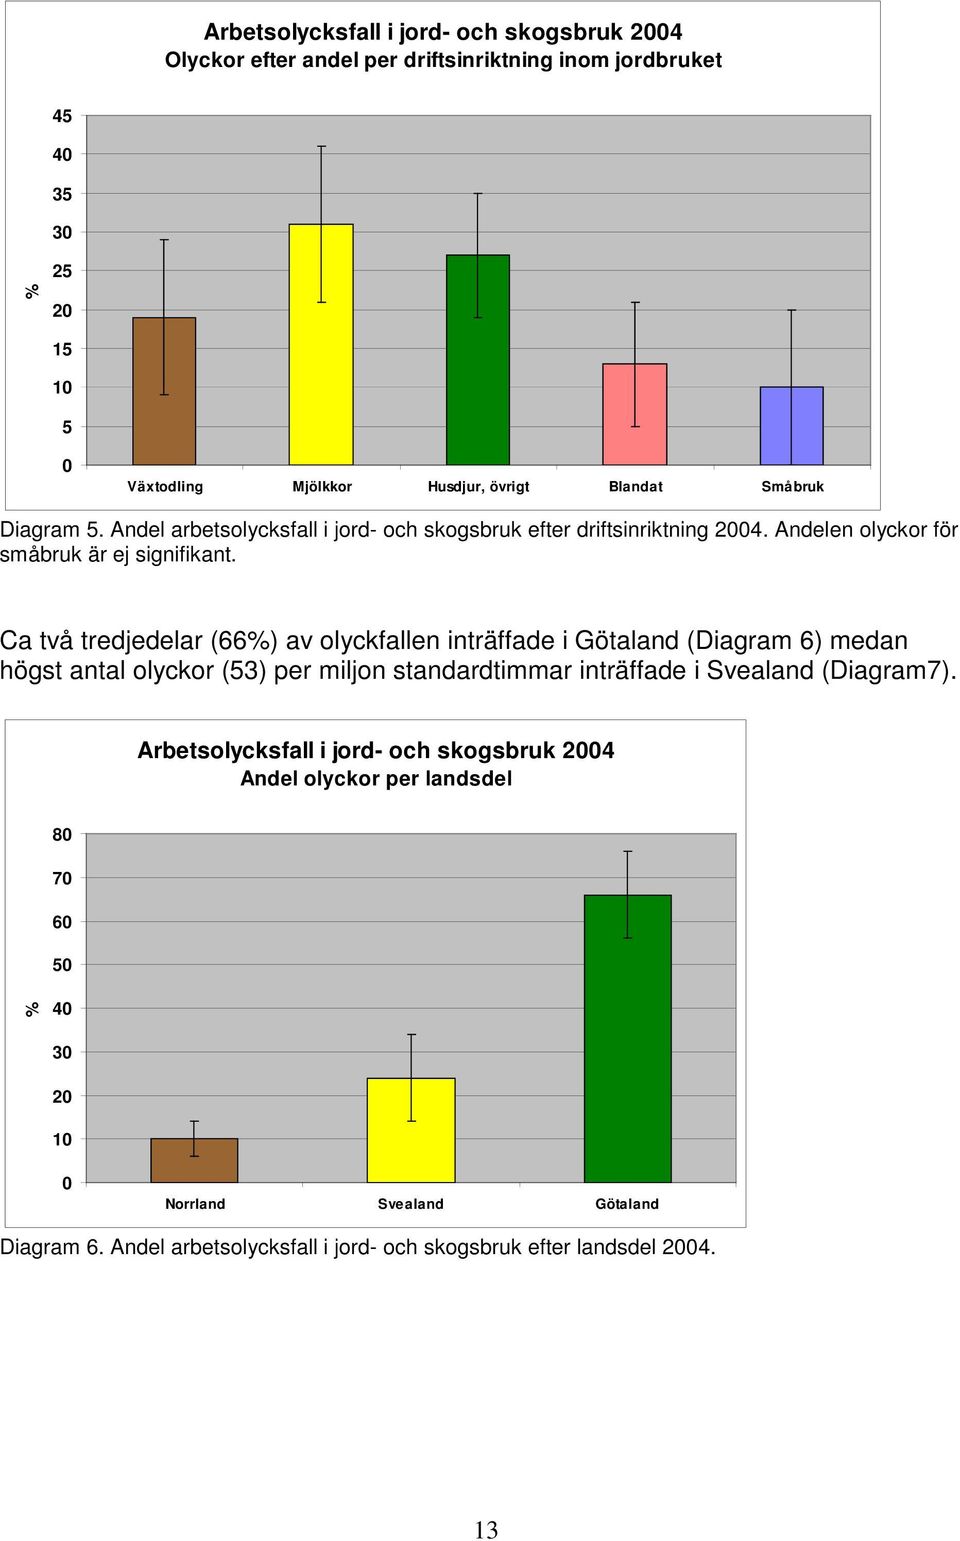 Ca två tredjedelar (66%) av olyckfallen inträffade i Götaland (Diagram 6) medan högst antal olyckor (53) per miljon standardtimmar inträffade i Svealand (Diagram7).